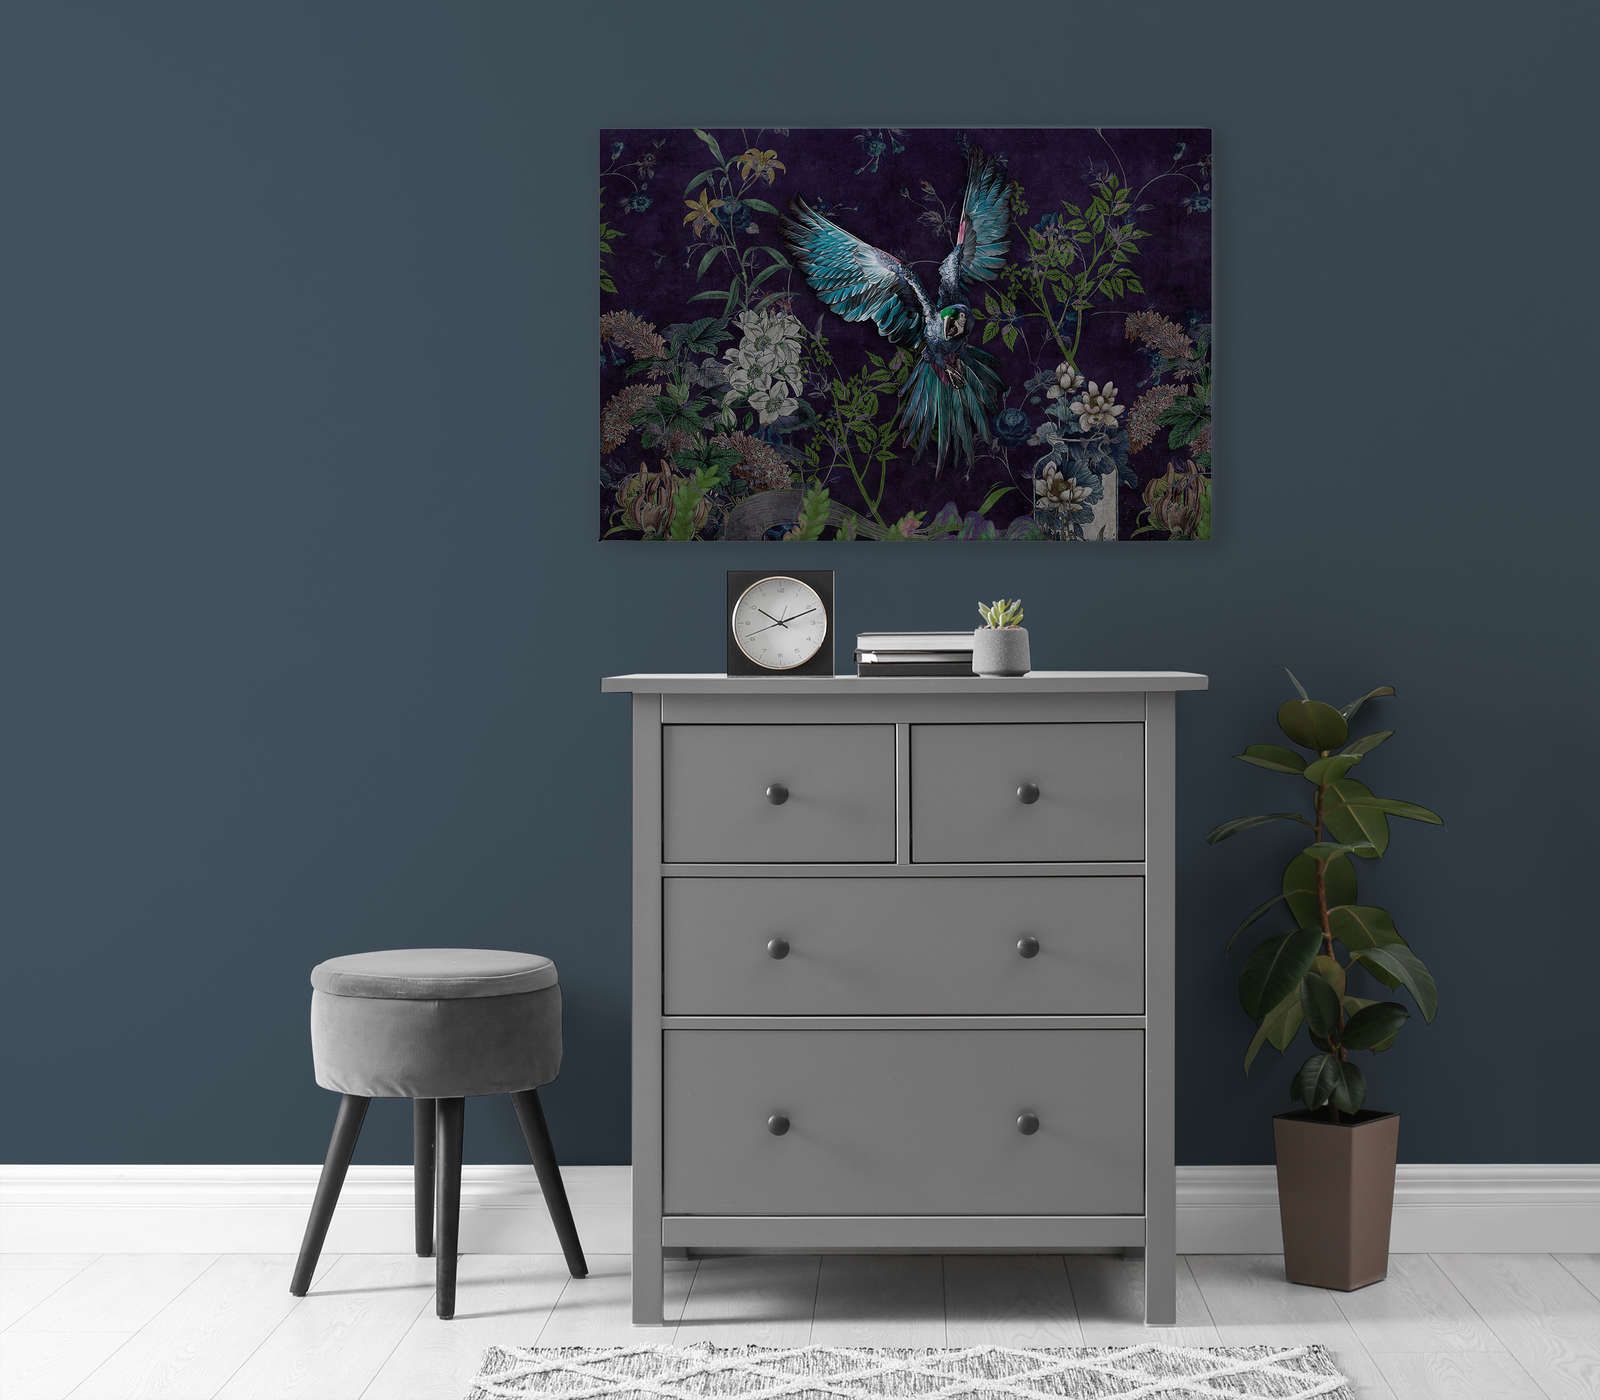             Tropical Hero 2 - Papagei Leinwandbild Blumen & schwarzer Hintergrund – 0,90 m x 0,60 m
        